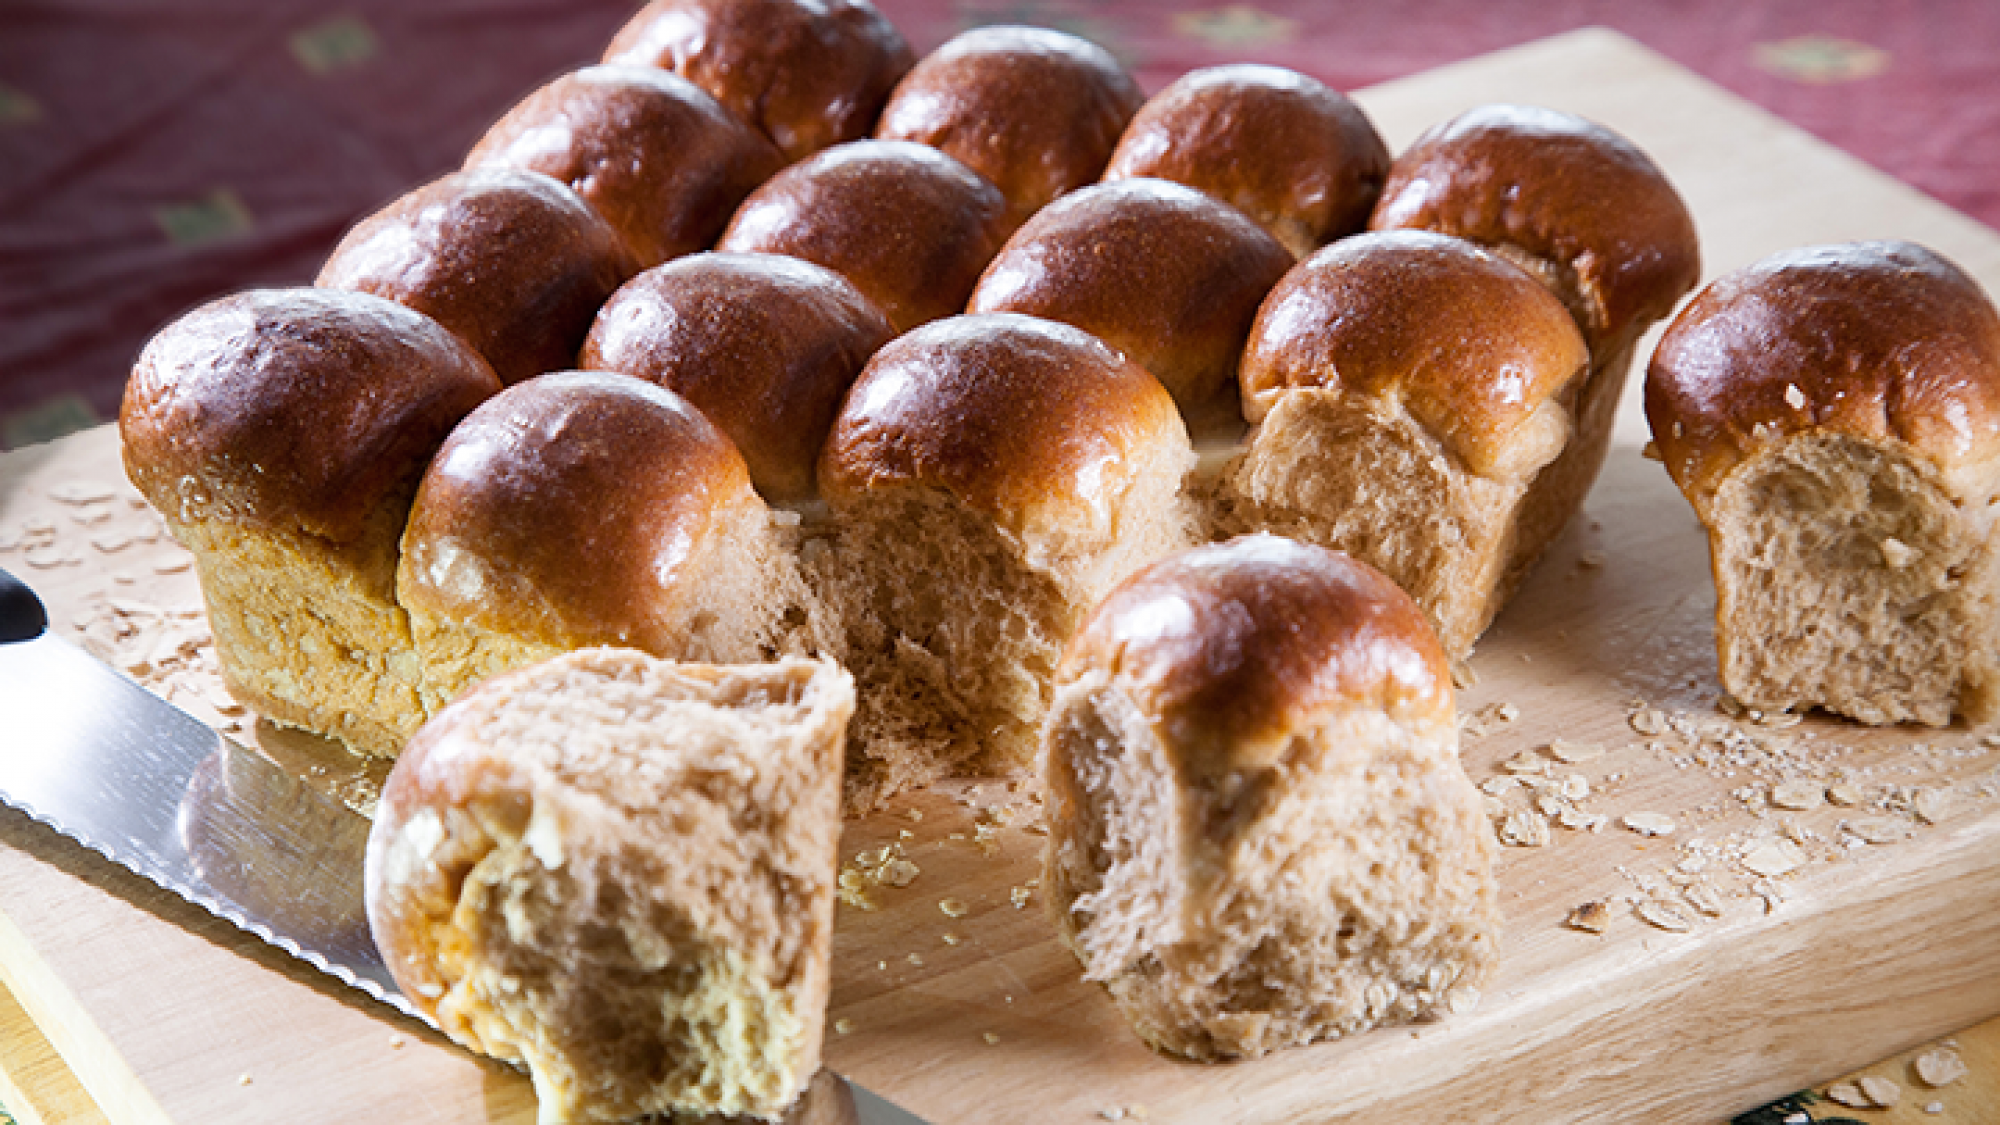 לחמניות רכות ואווריריות מקמח לחם מלא 100%| צילום: מנחם גרייבסקי